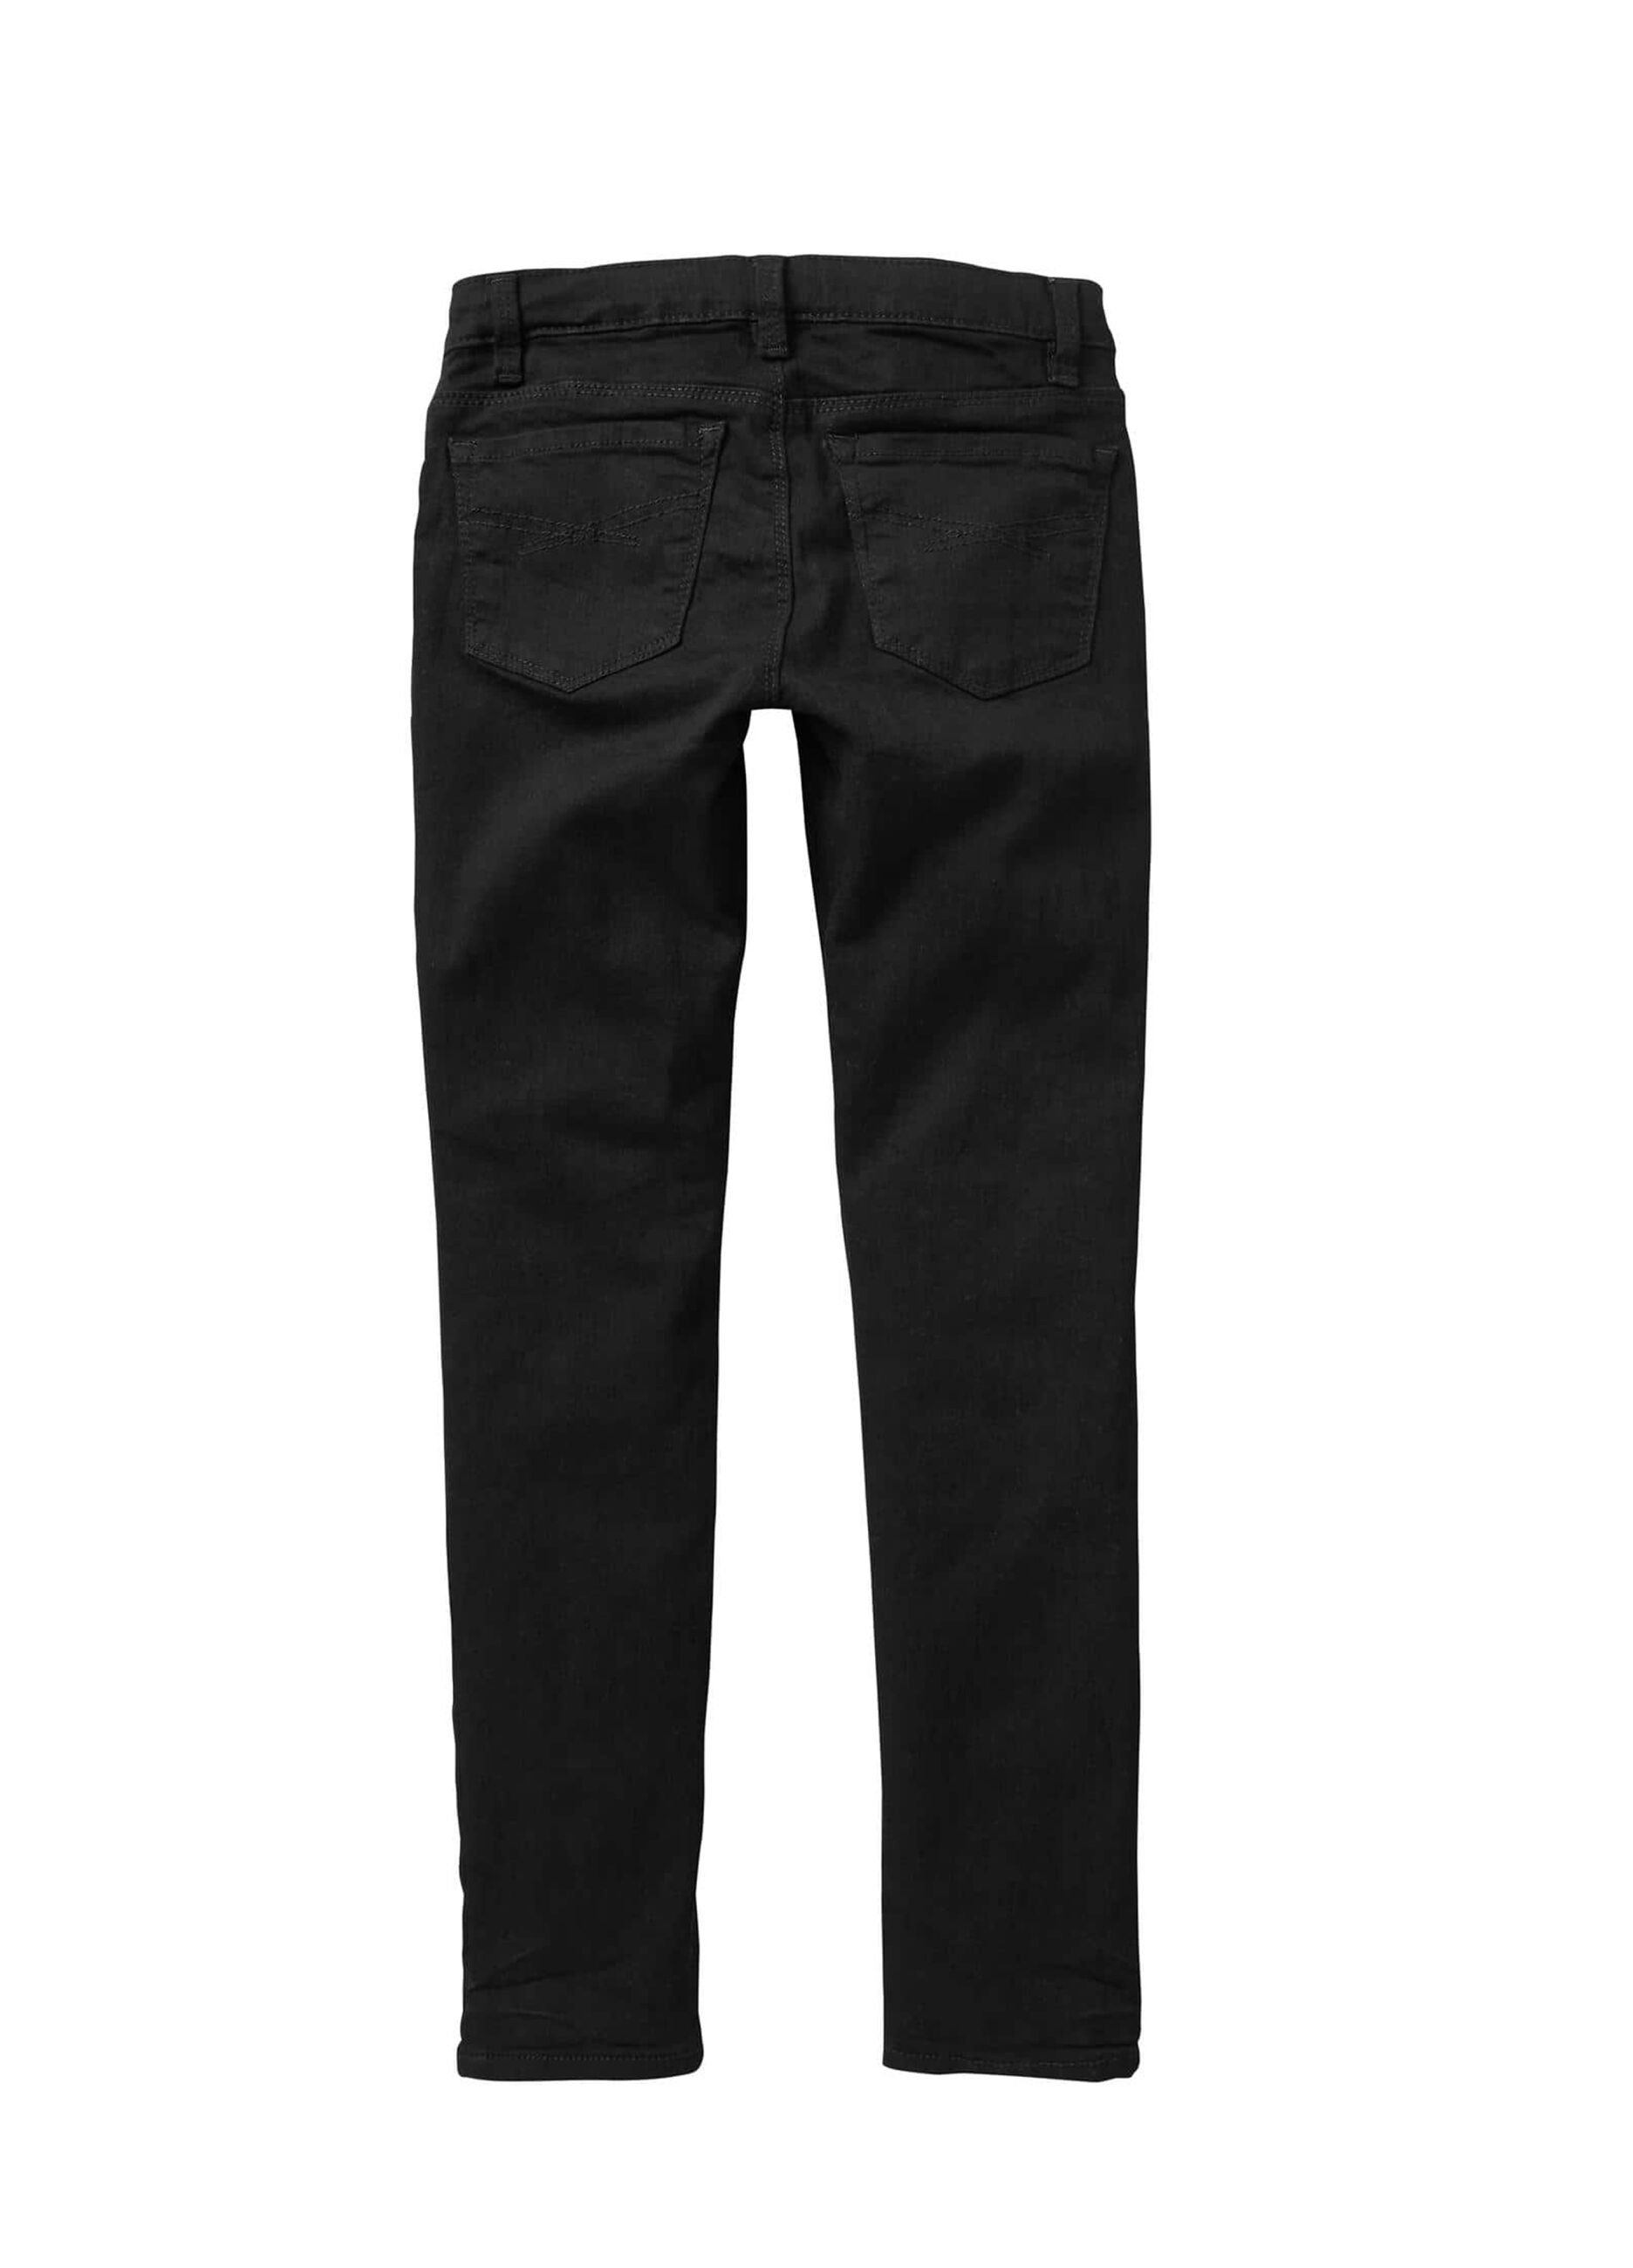 5-pocket, super-skinny jeans